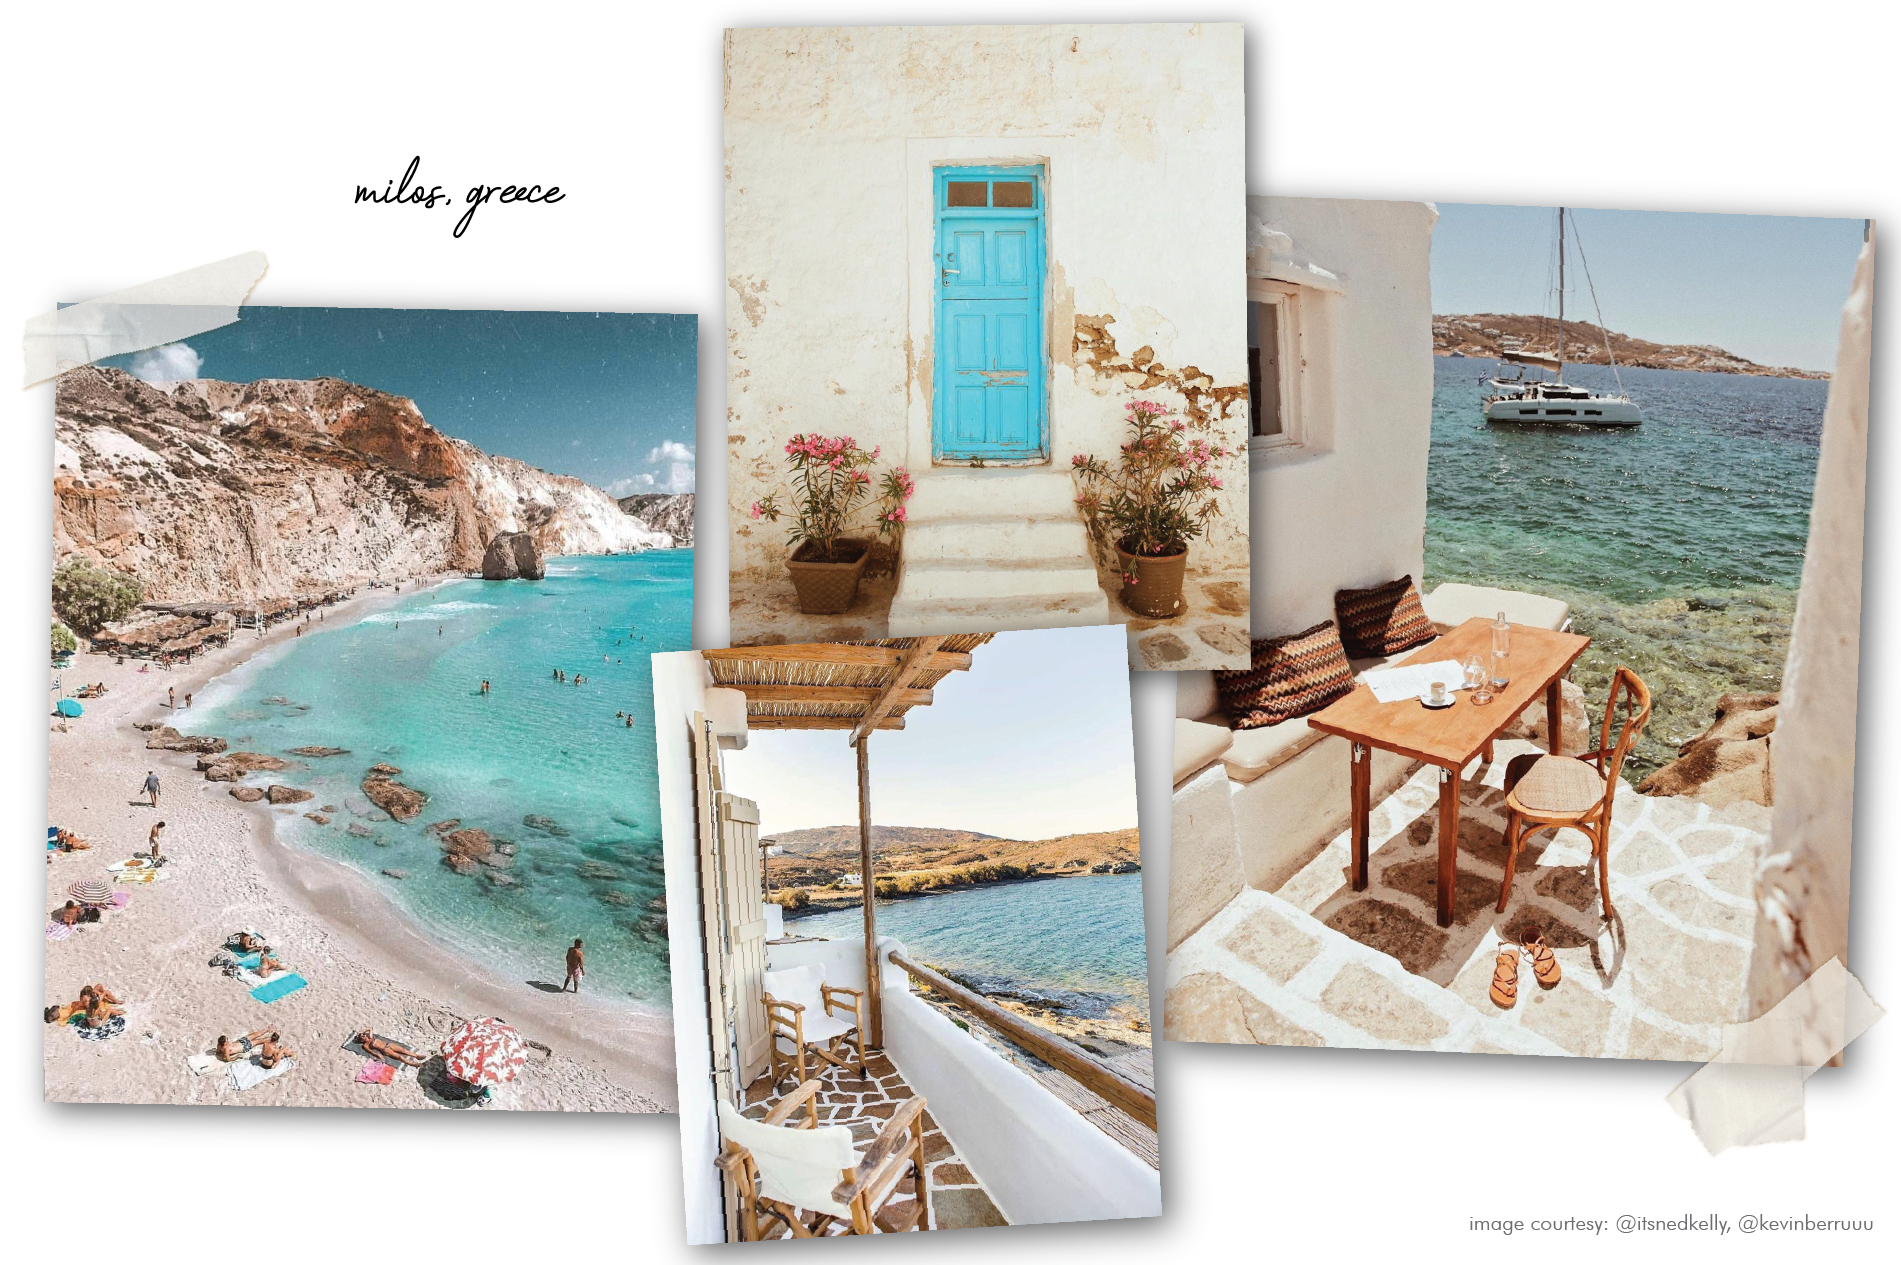 milos greece postcards